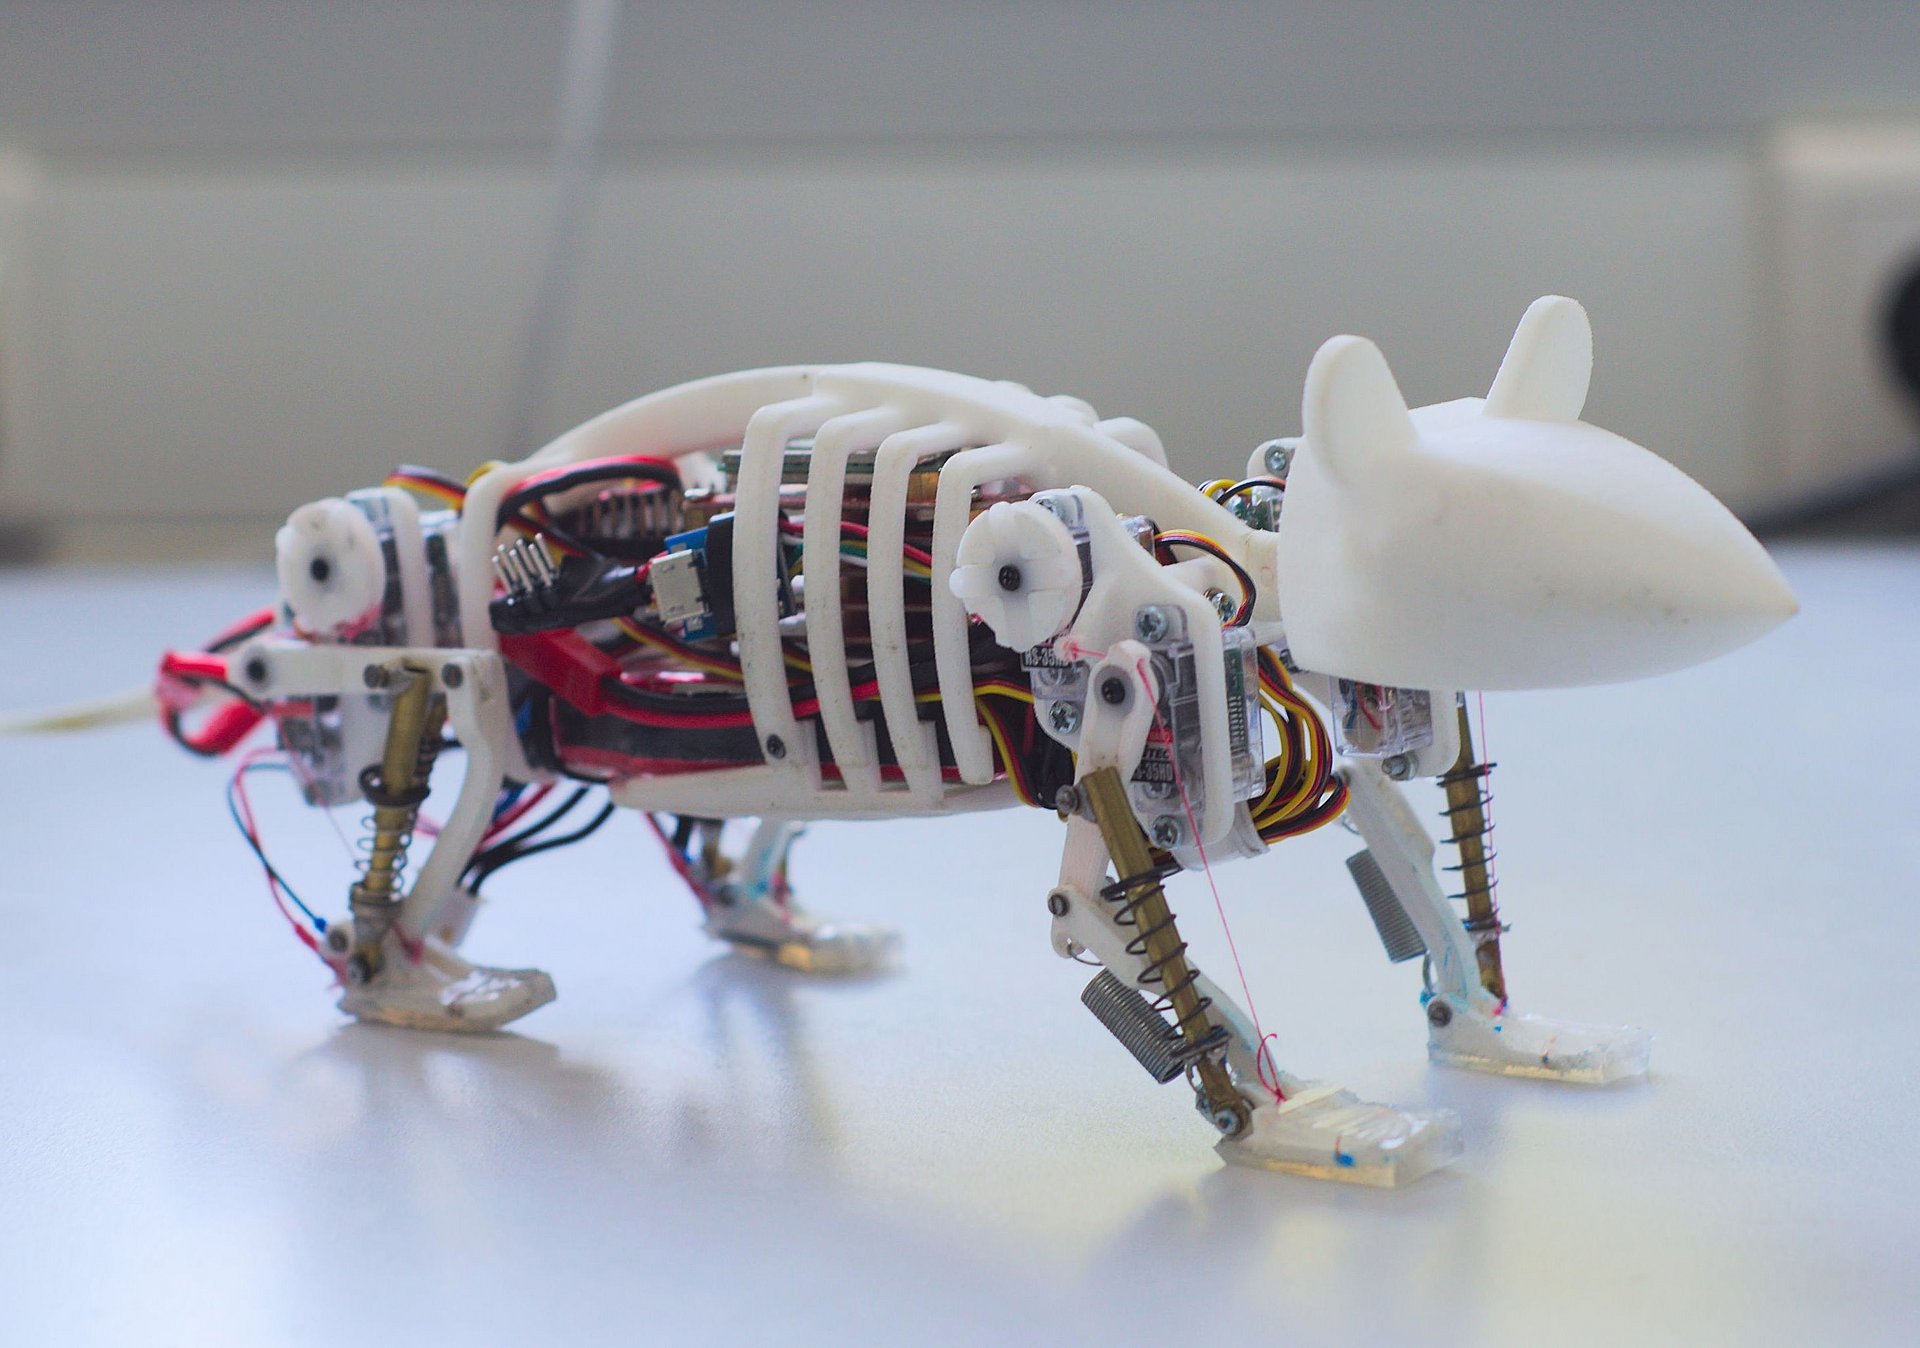 Mithilfe Künstlicher Intelligenz lernt die Robotermaus zu gehen wie eine lebende Maus.